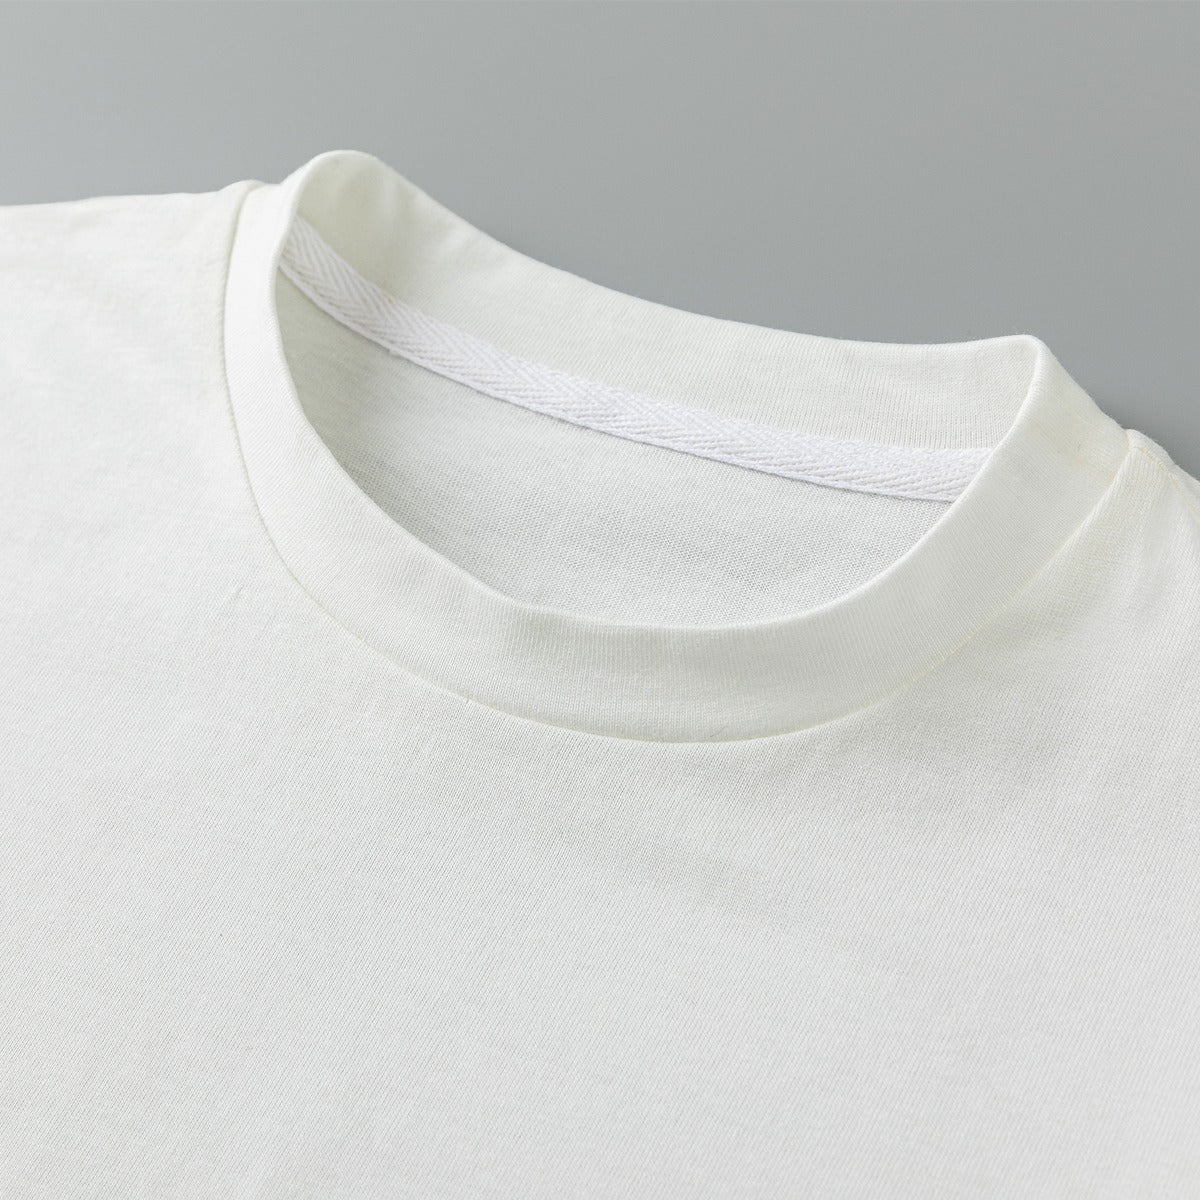 Boys Bulldozer Shirt 100% Cotton - Clothes that Calm